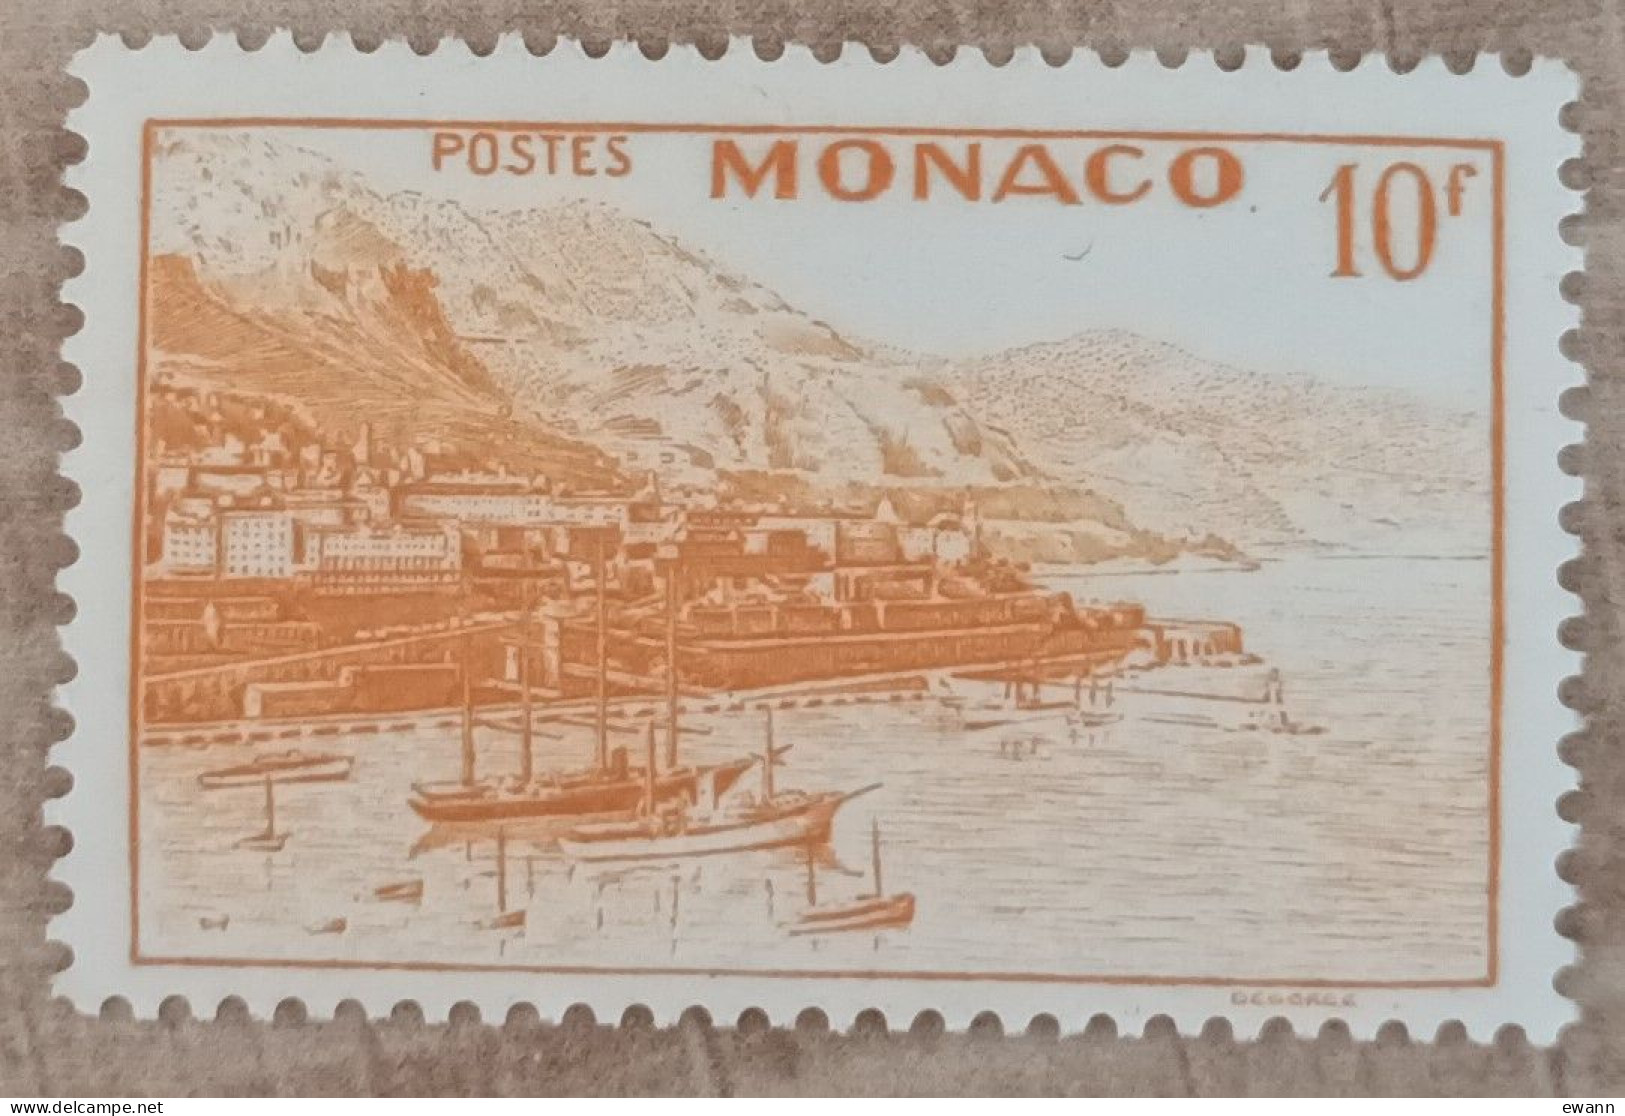 Monaco - YT N°311A - Vues De La Principauté - 1948/49 - Neuf - Unused Stamps